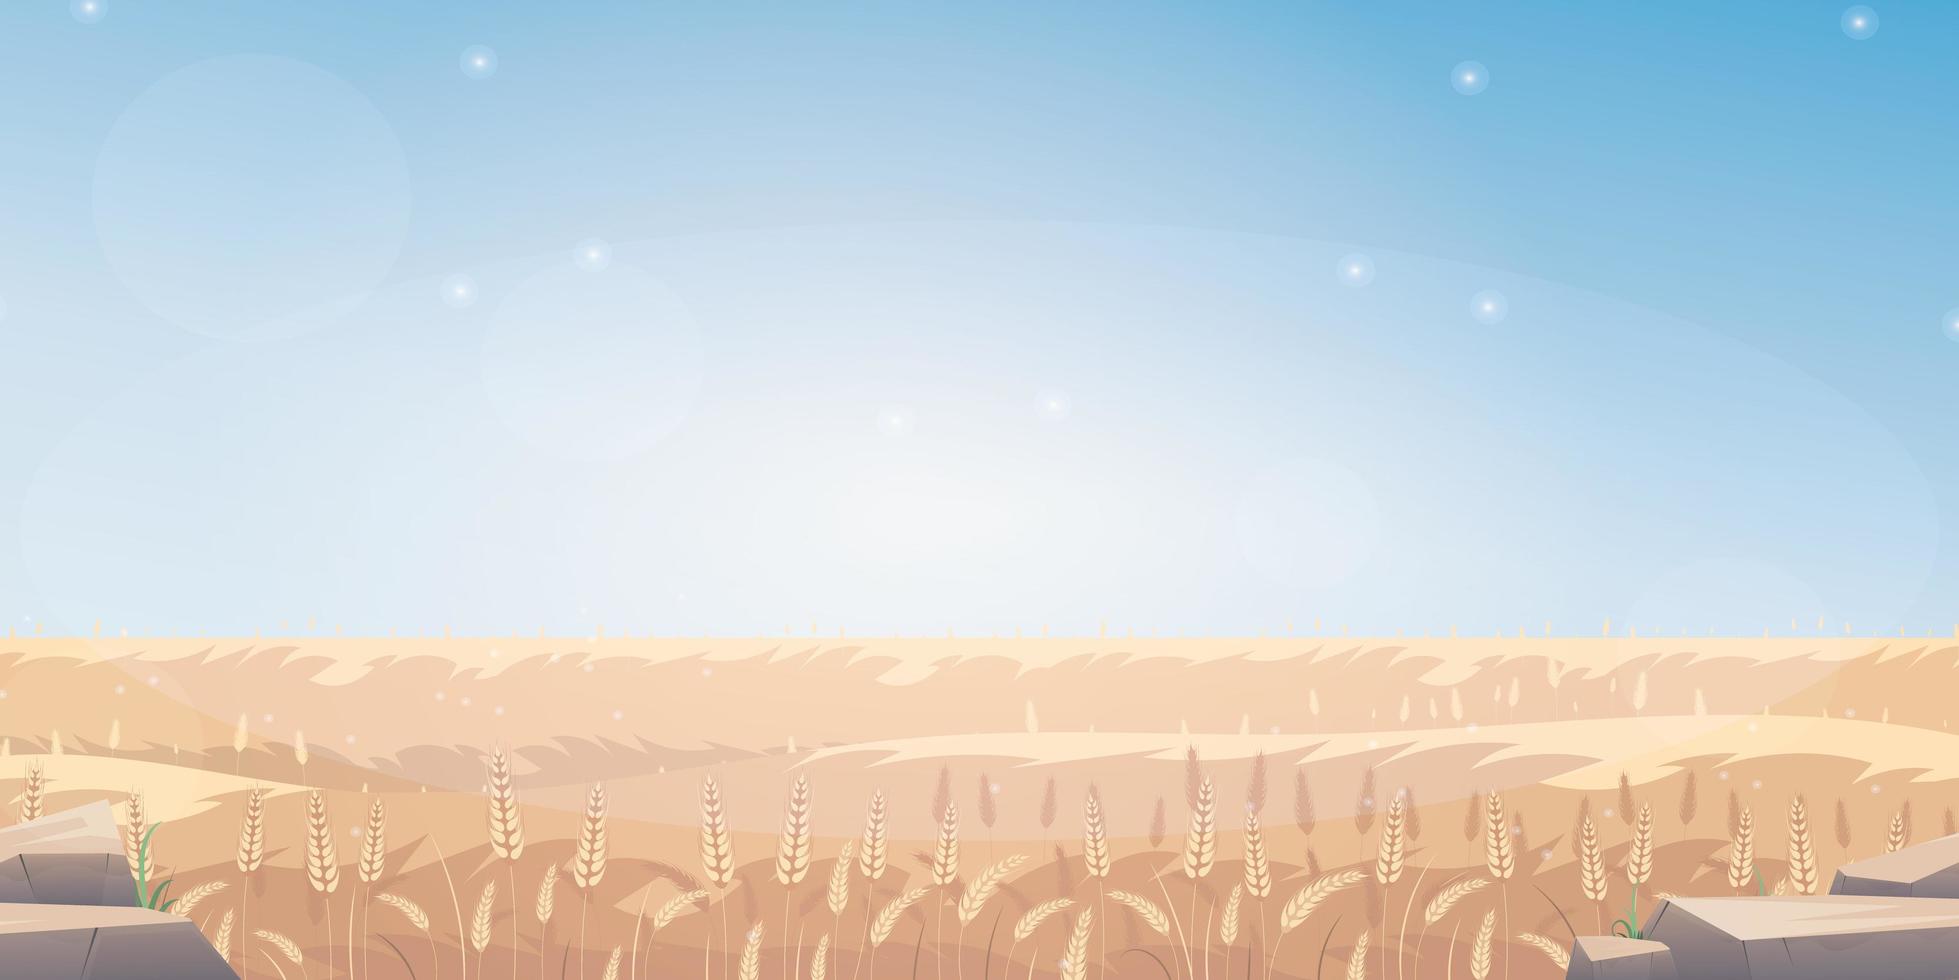 landsbygdslandskap med vetefält och den blå himlen på bakgrunden. vektor illustration.